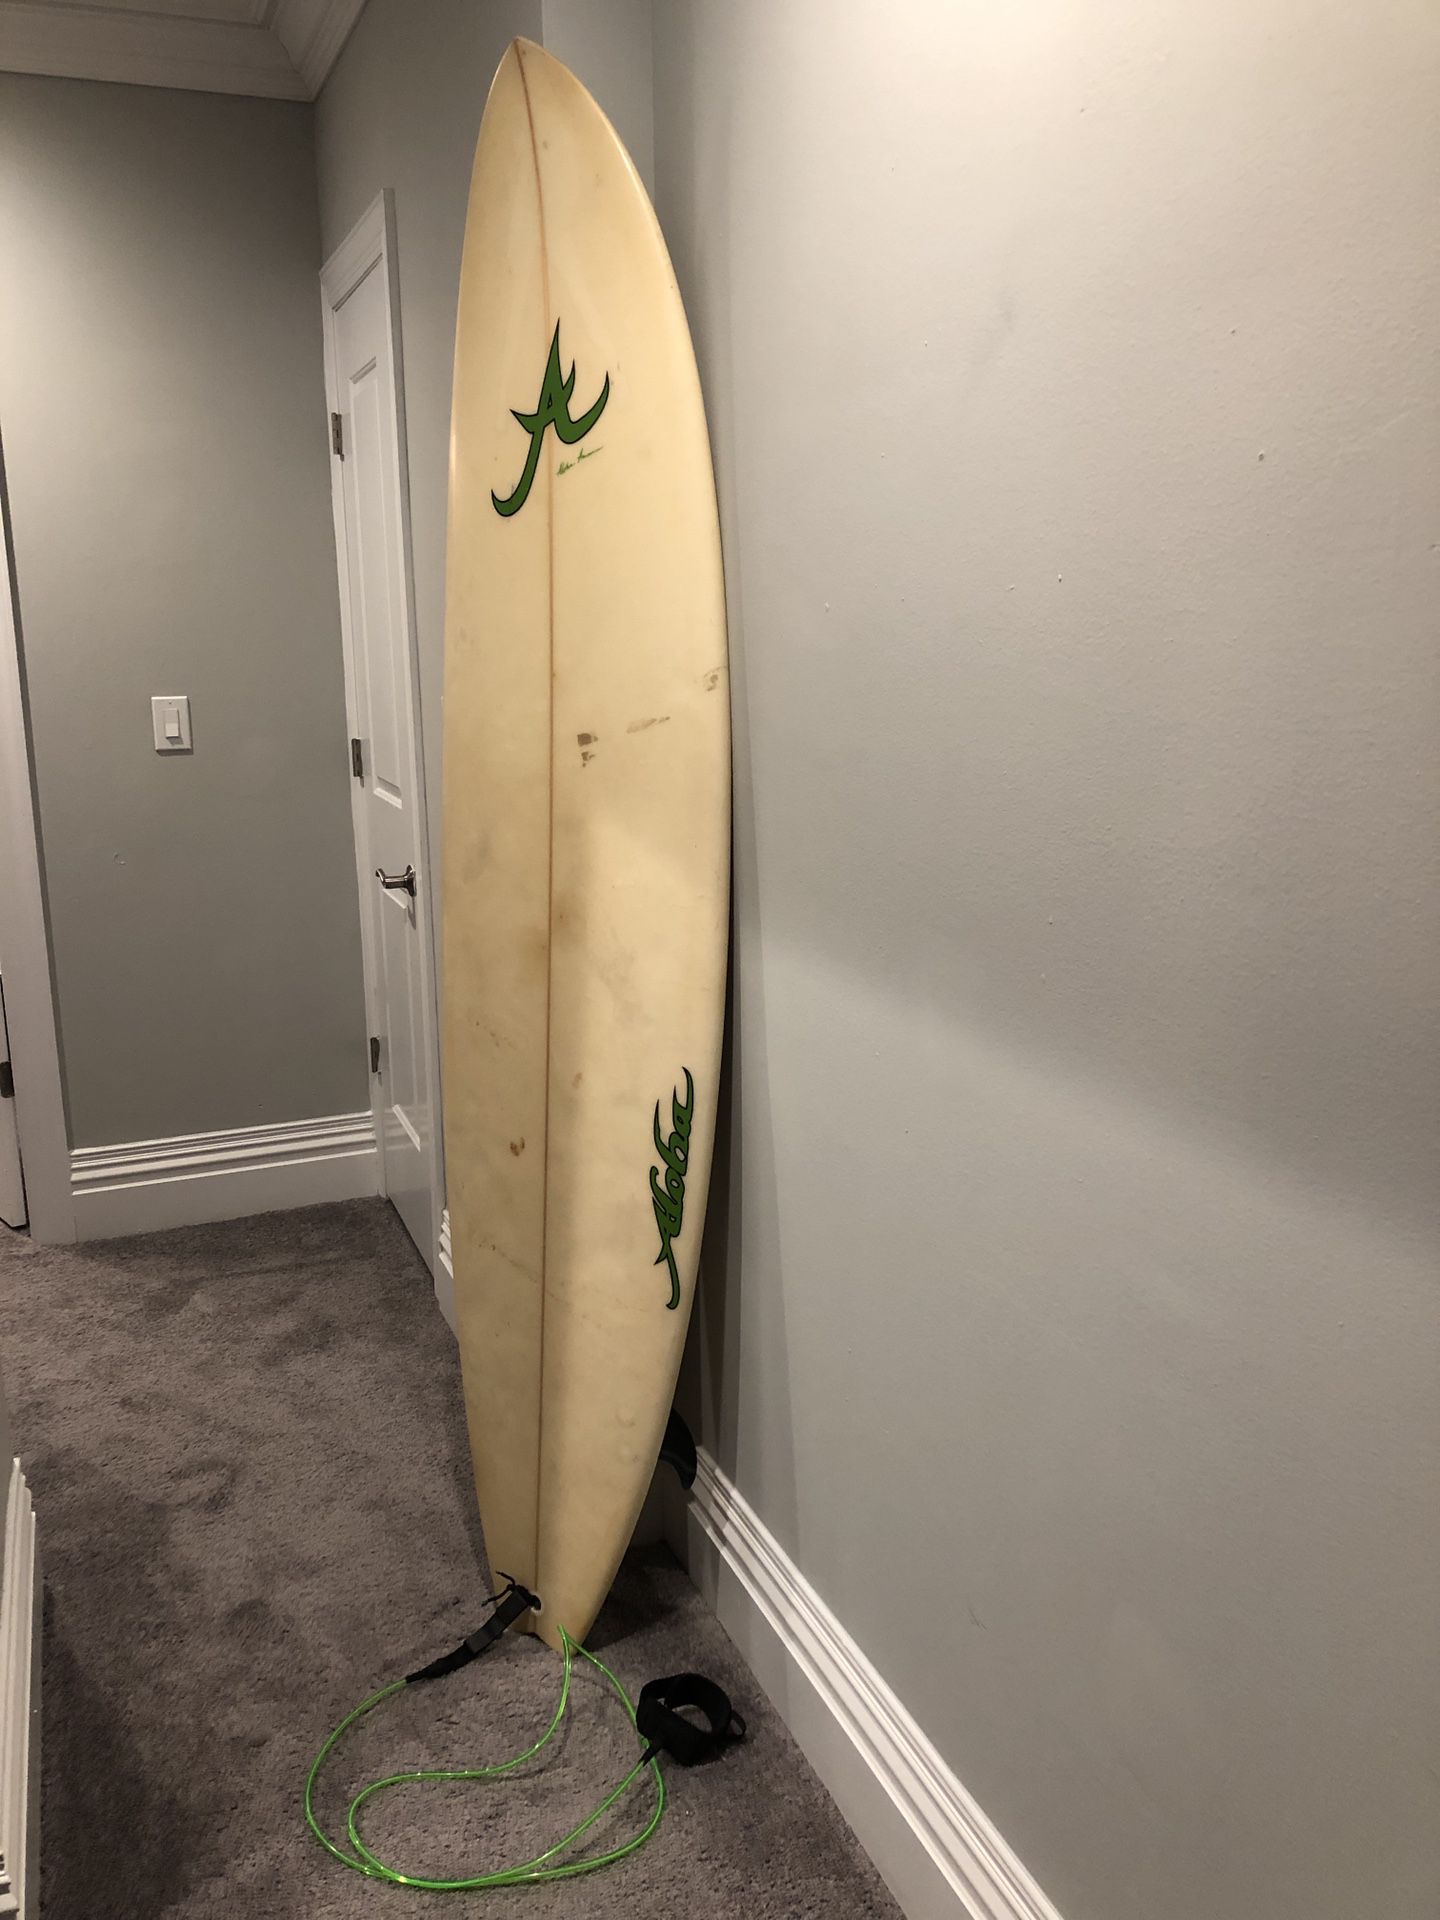 MG Fun Size Surfboard (Mauricio Gil 7’2” Board)